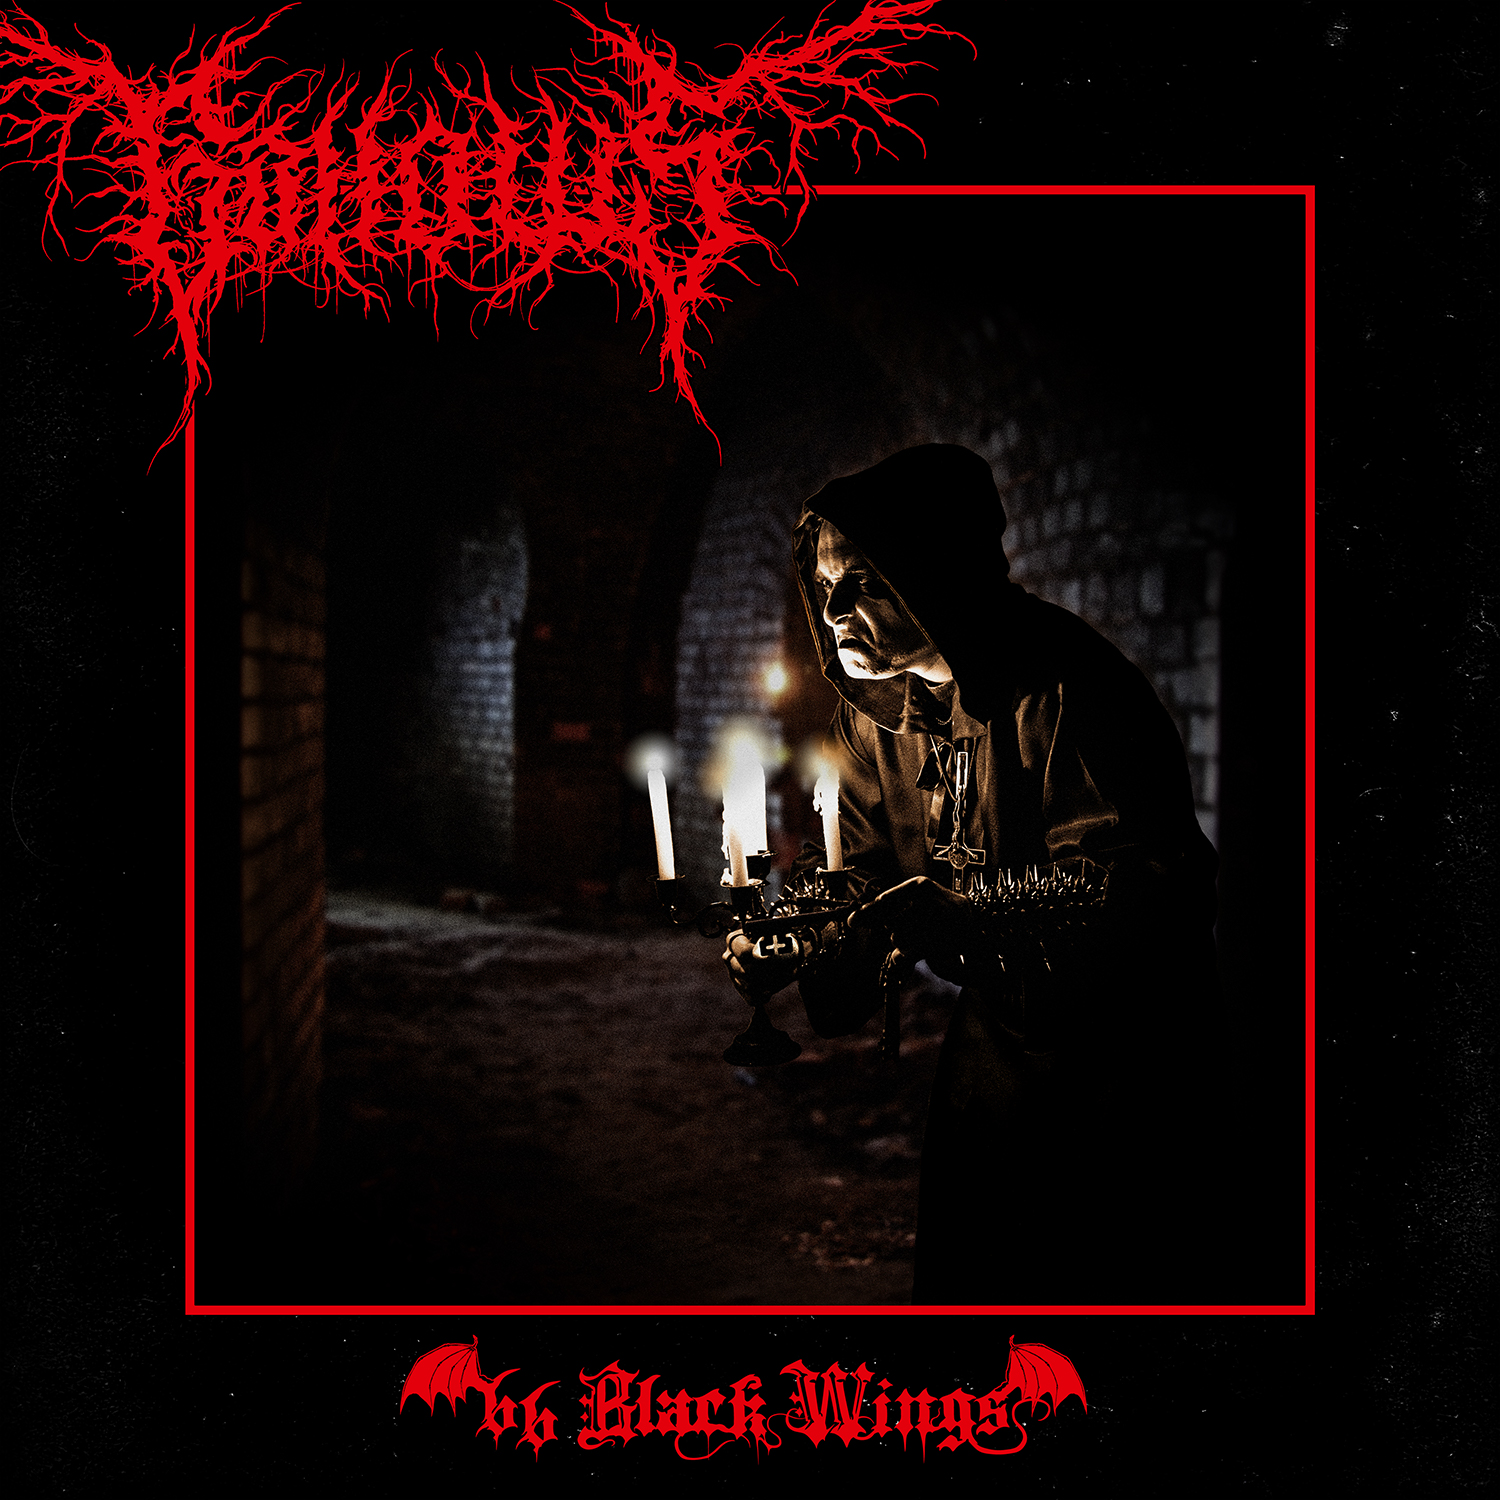 <i>66 Black Wings</i> album art